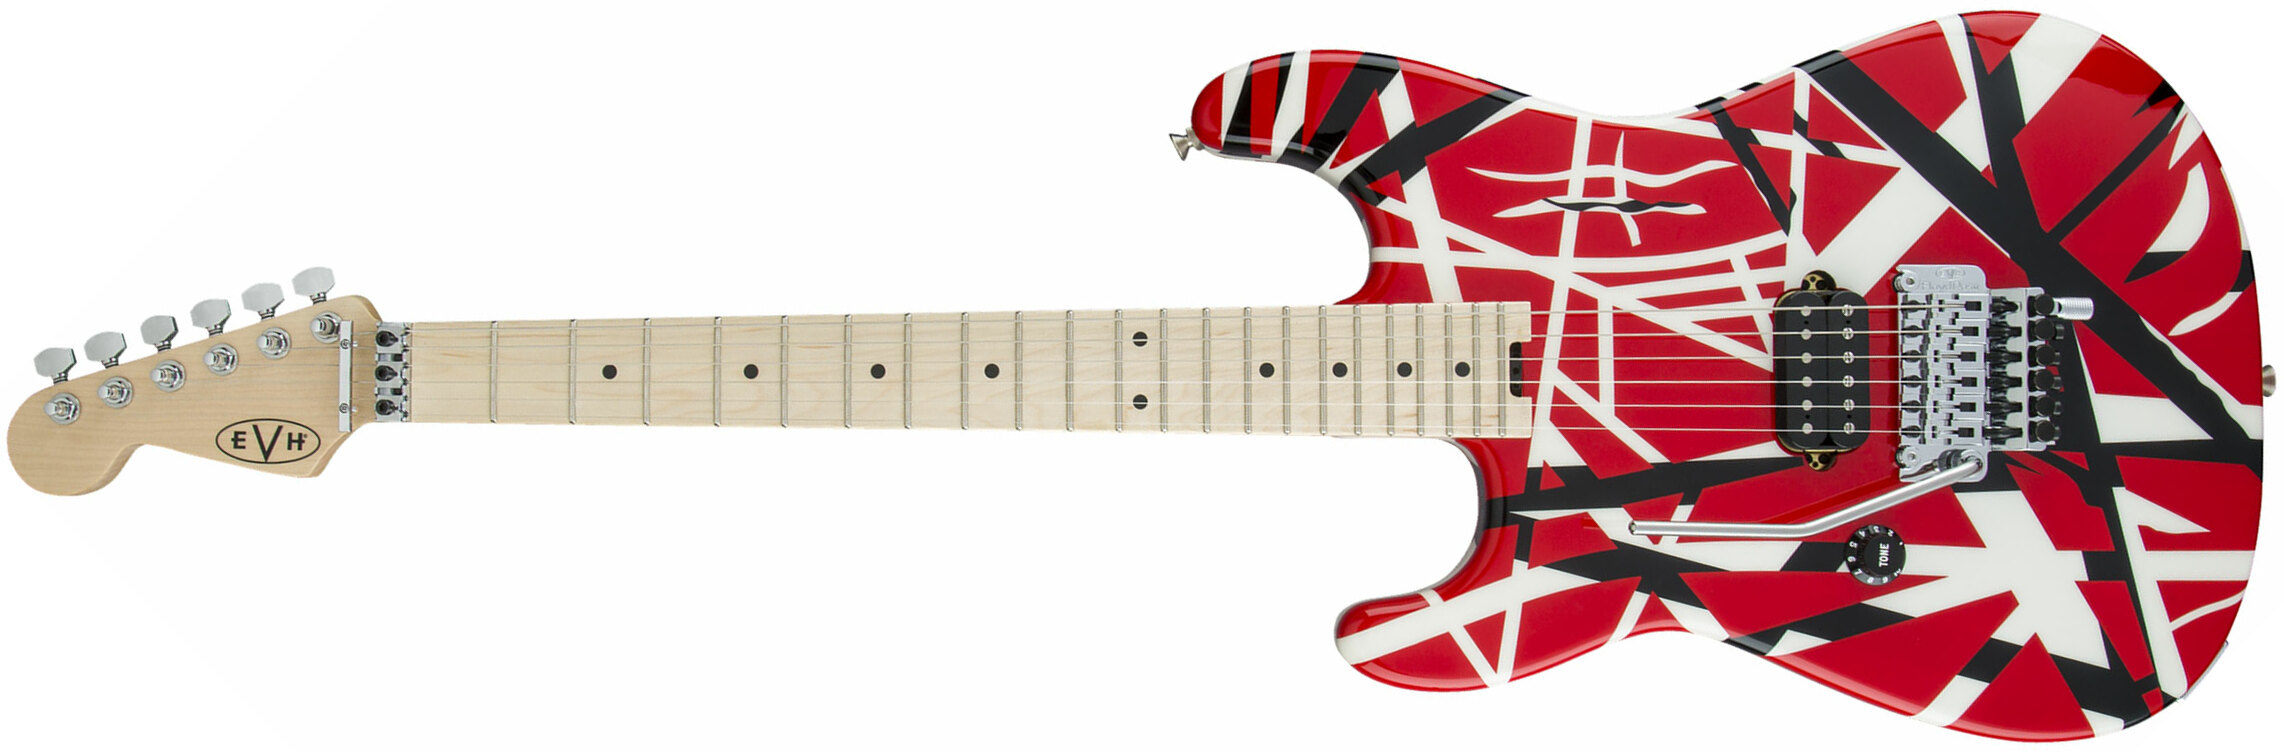 Evh Striped Series Lh Gaucher Signature H Fr Mn - Red Black White Stripes - E-Gitarre für Linkshänder - Main picture